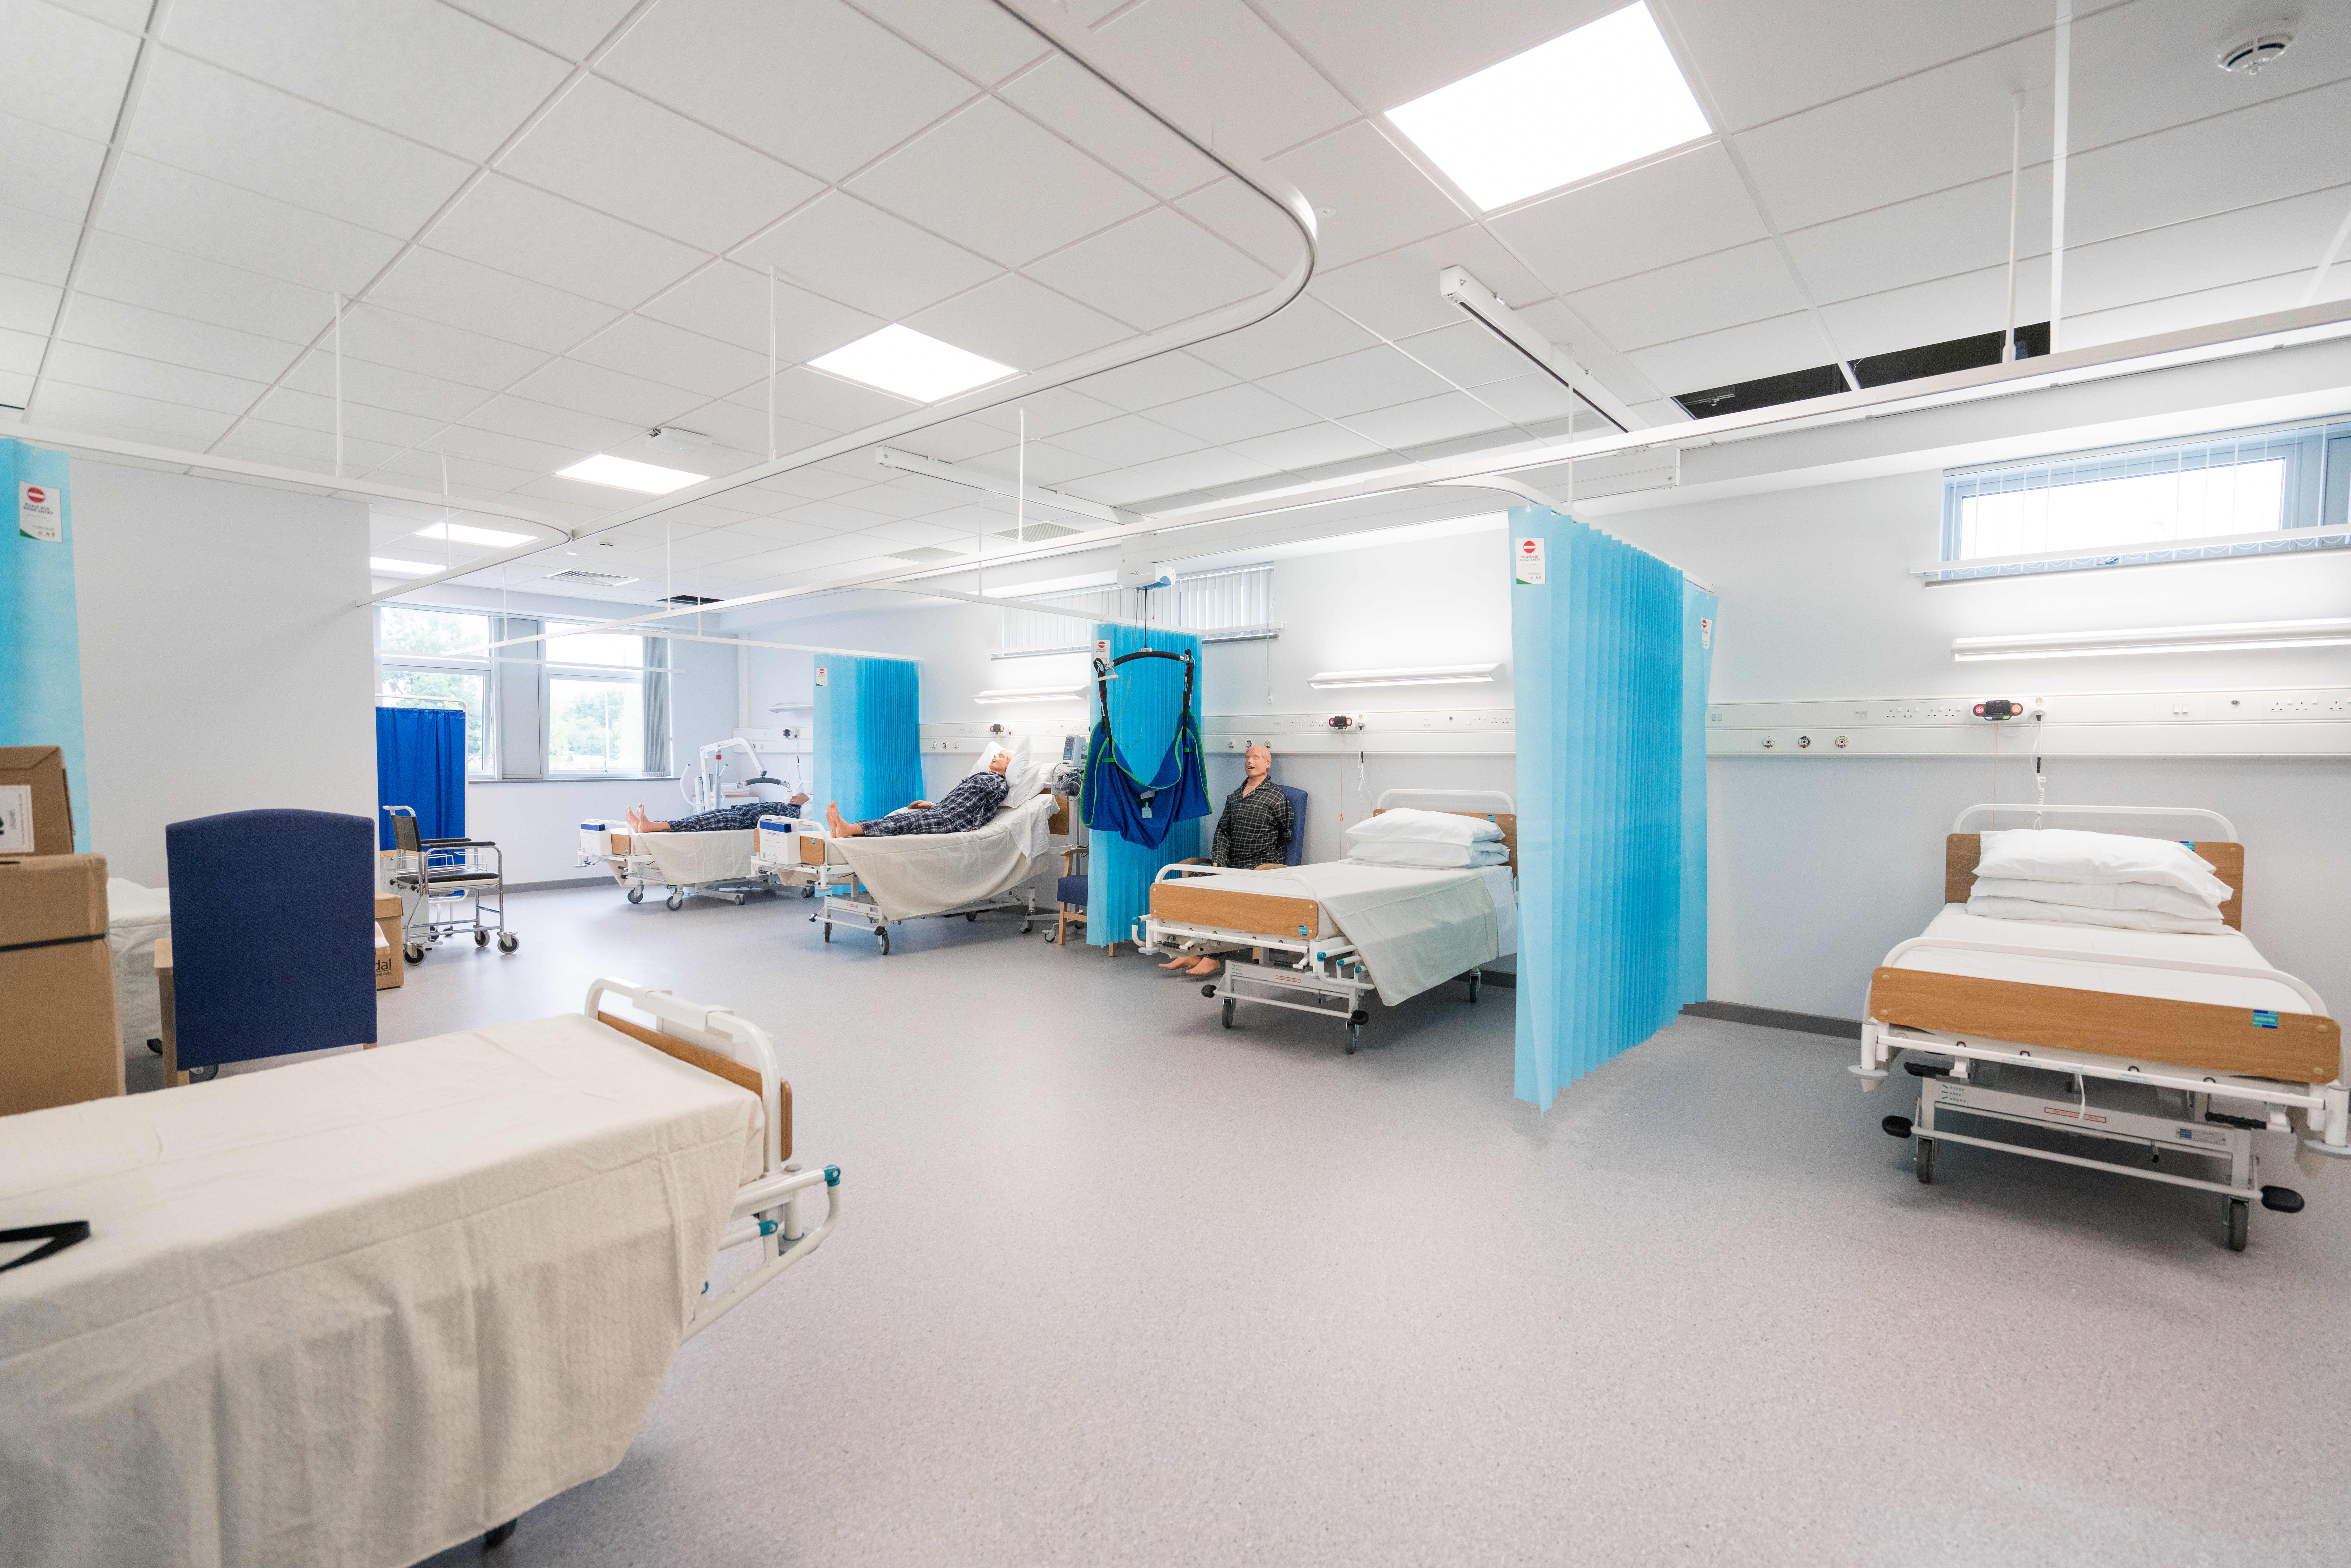 Simulation room looking like hospital